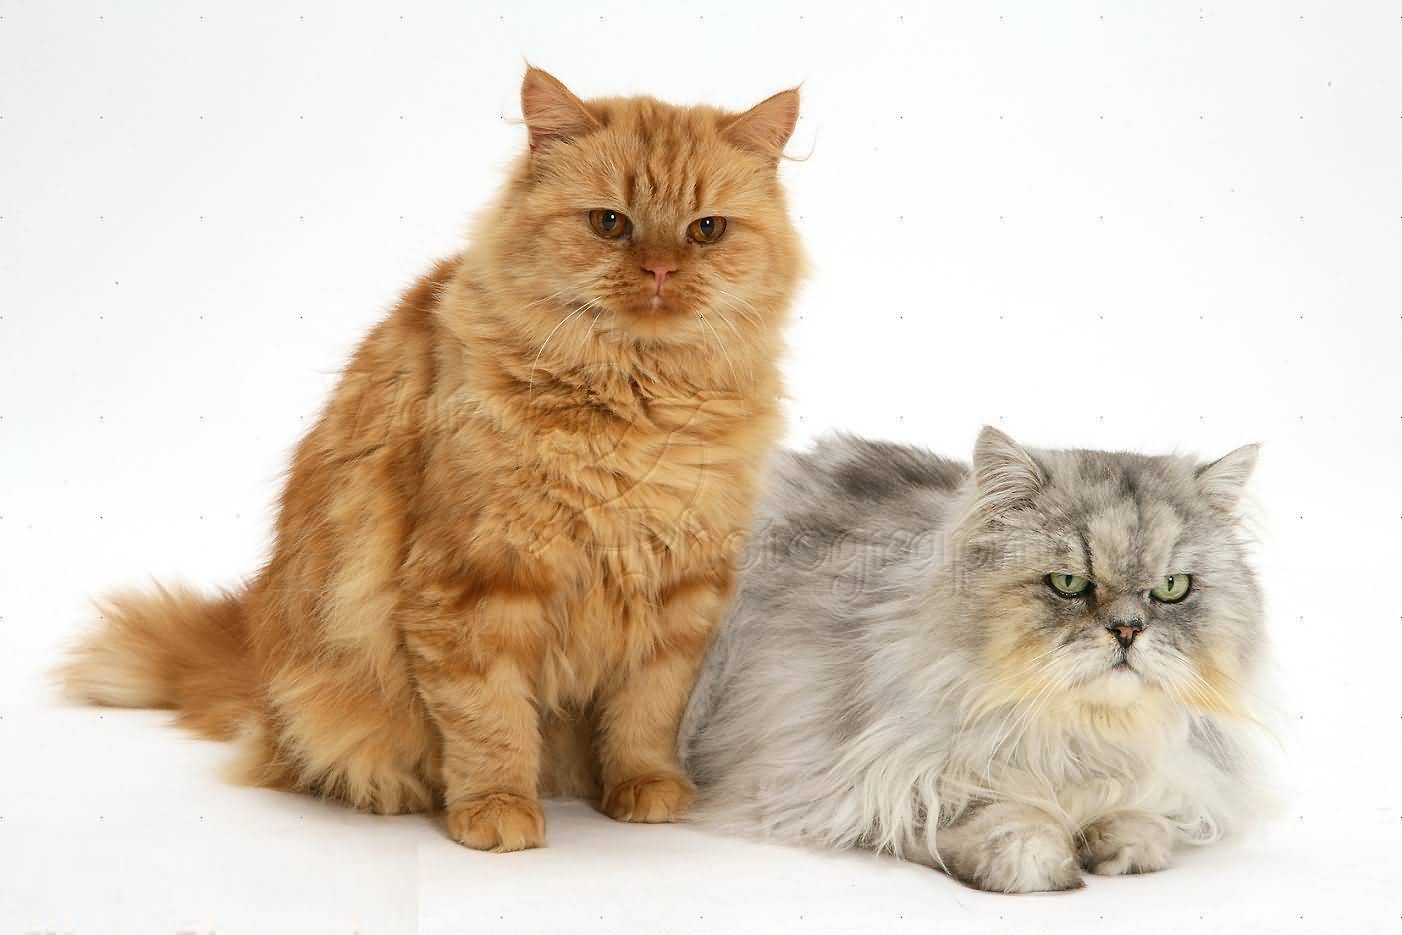 Питание абиссинских кошек: магазинный корм или натуральная еда